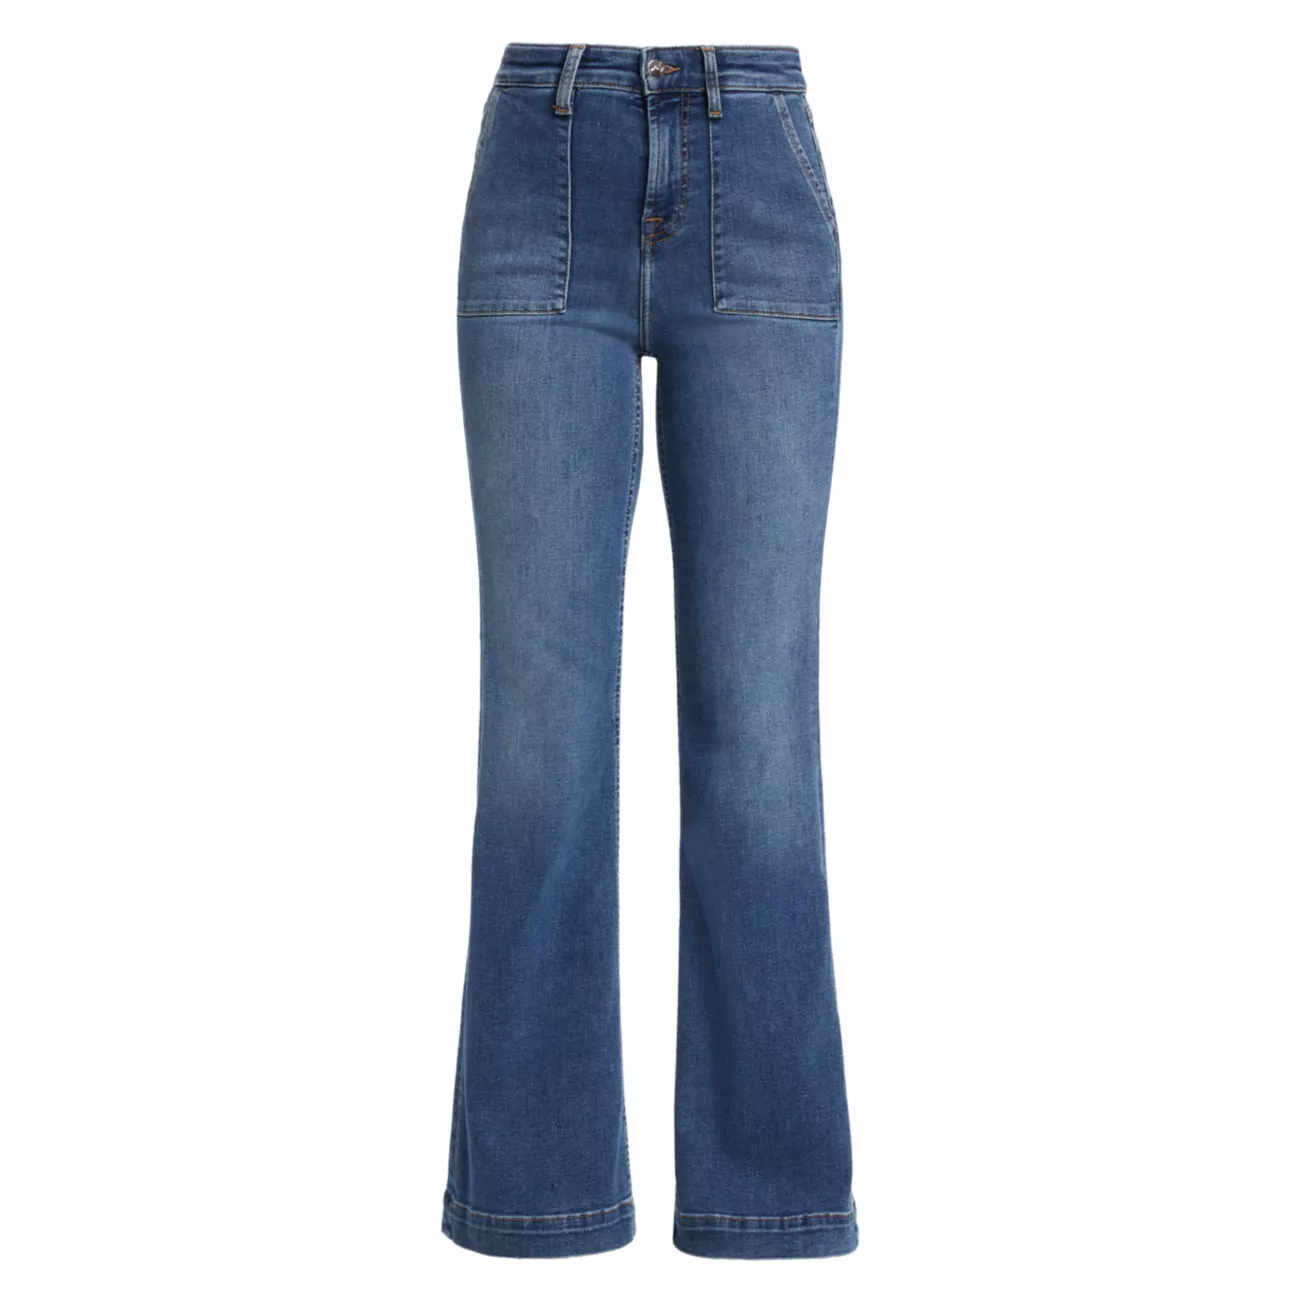 Расклешенные джинсы с высокой посадкой и накладными карманами JEN7